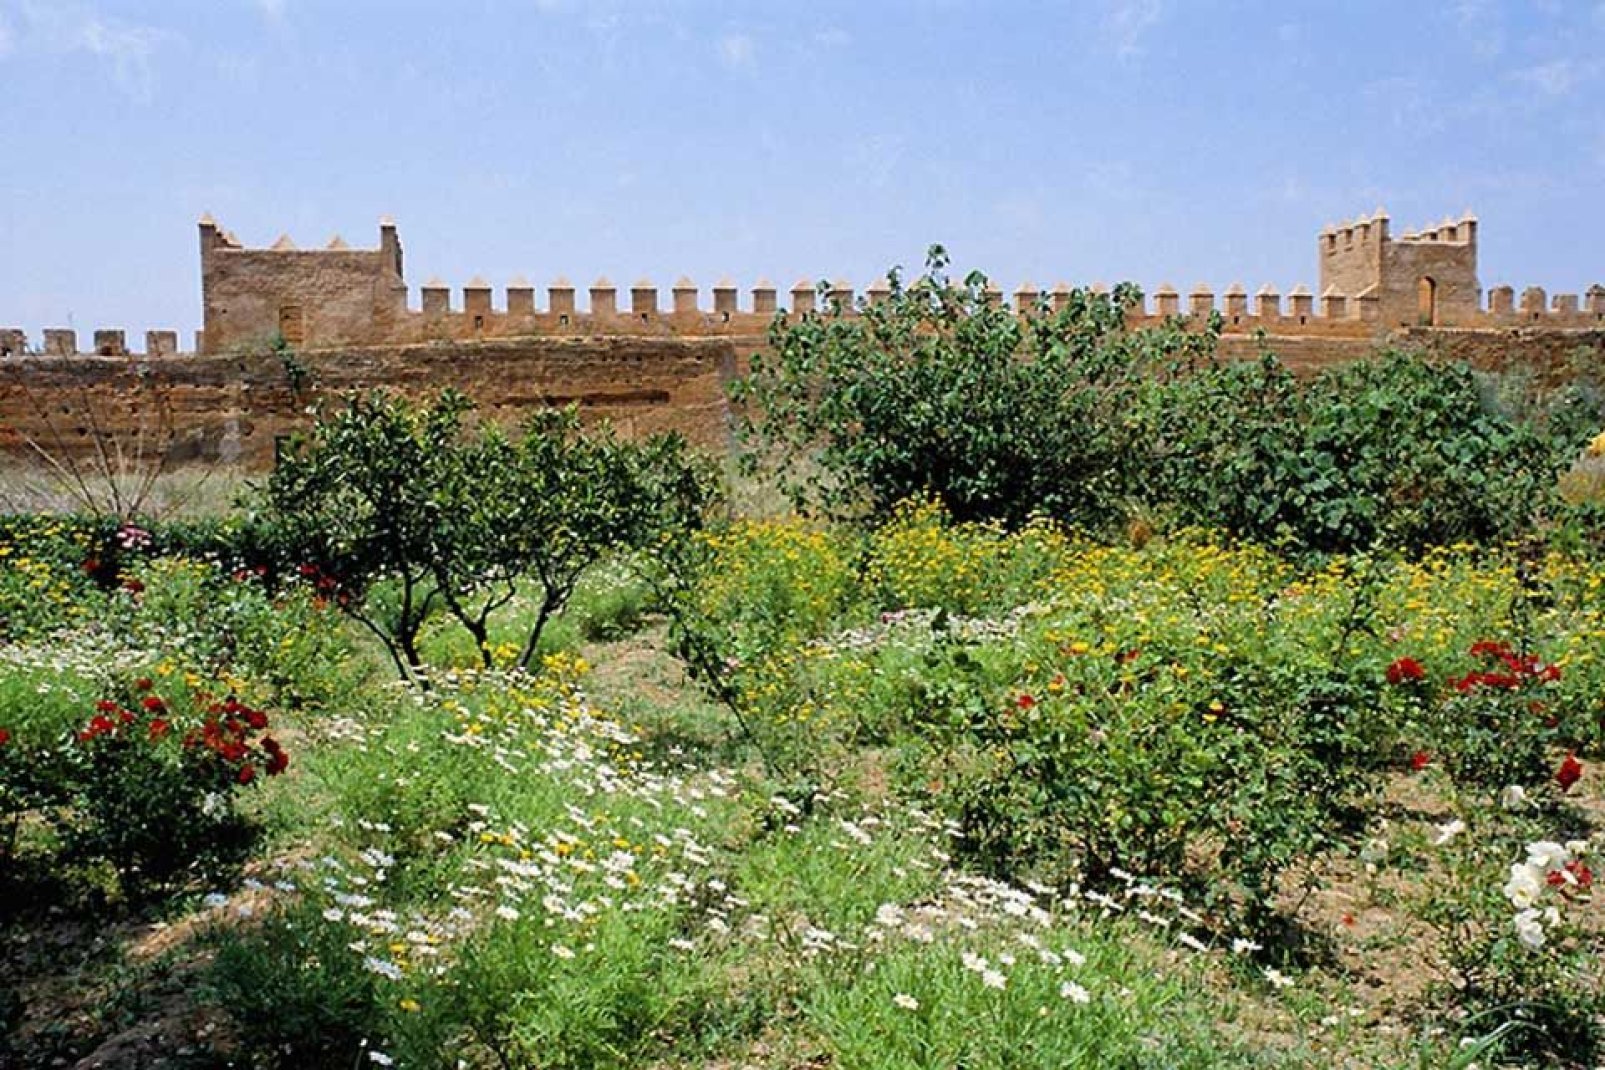 Après la visite de la kasbah, profitez en pour flaner dans les reposants jardins de style andalou.